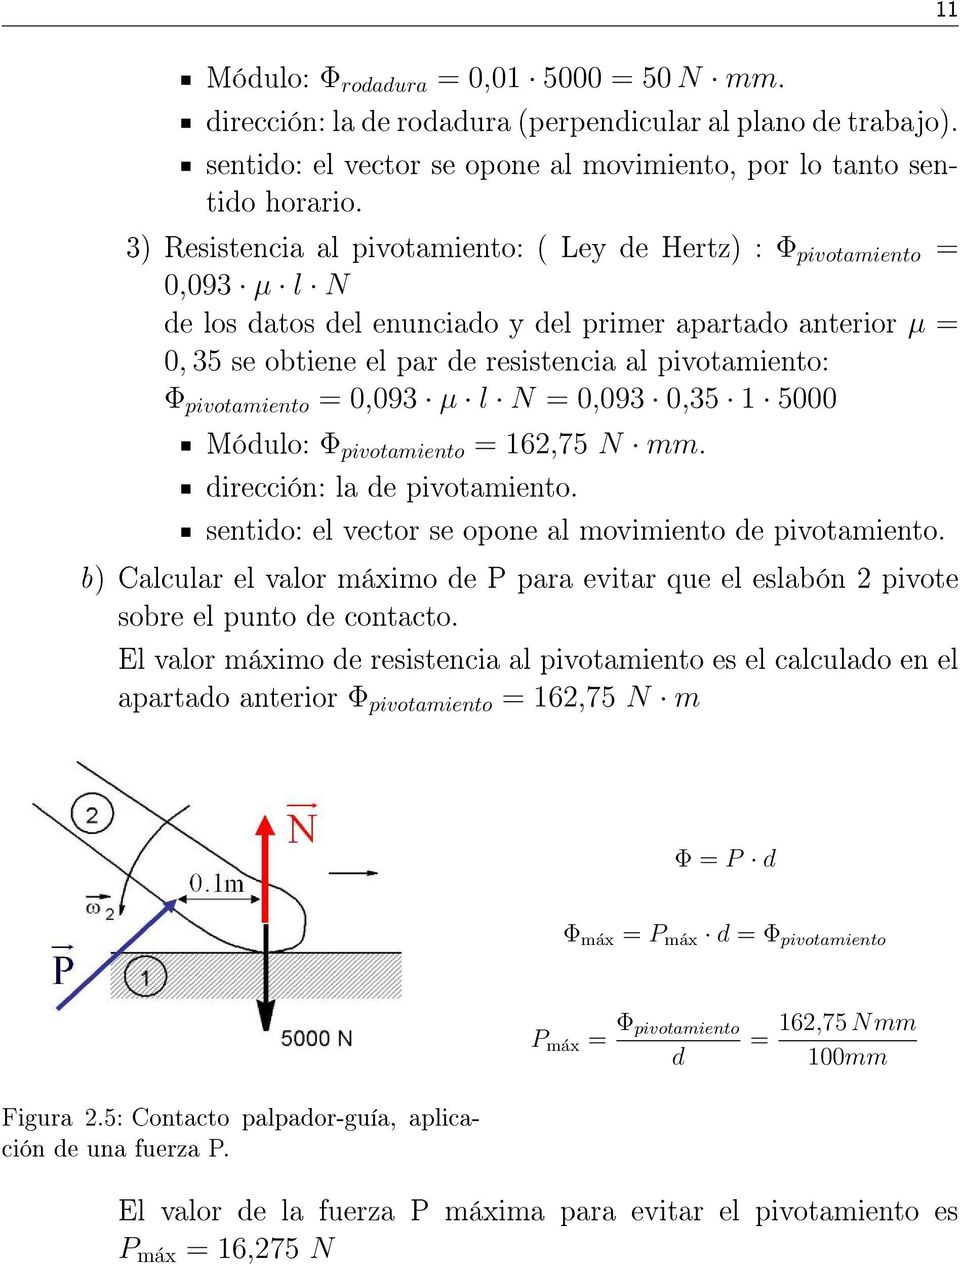 pivotamiento = 0,093 µ l N = 0,093 0,35 1 5000 Módulo: Φ pivotamiento = 162,75 N mm. dirección: la de pivotamiento. sentido: el vector se opone al movimiento de pivotamiento.